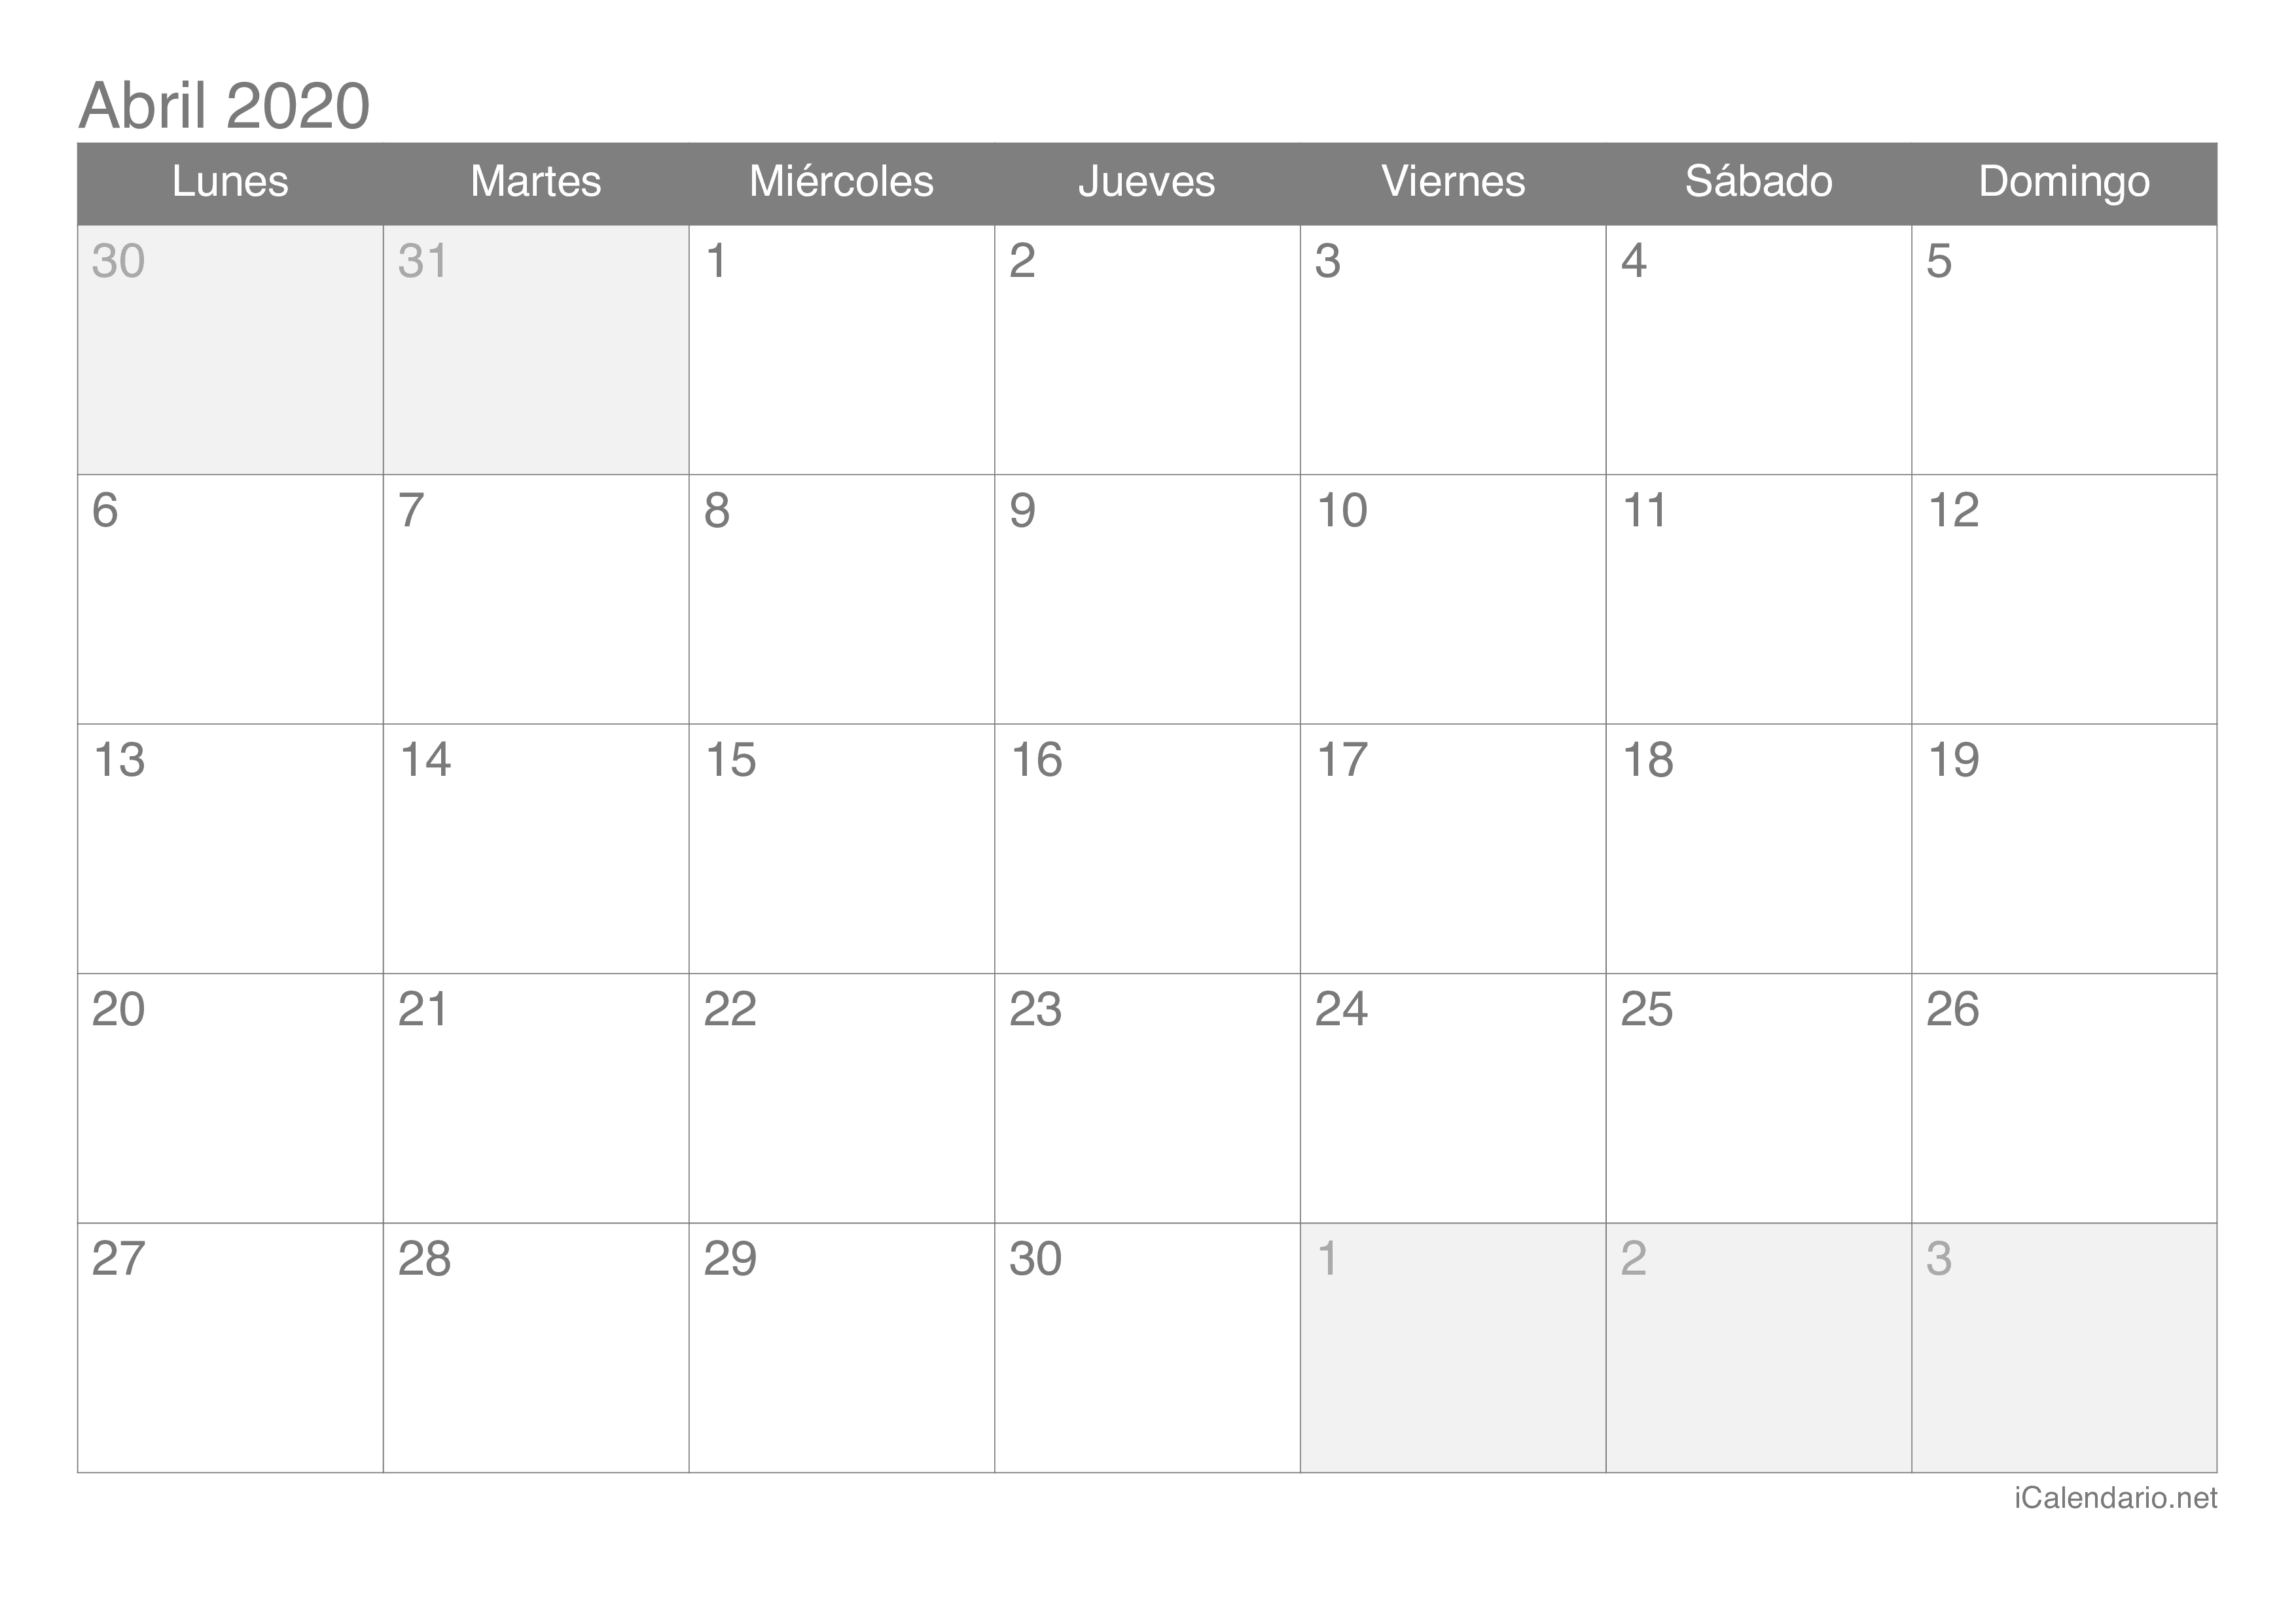 Calendario abril 2020 para imprimir - iCalendario.net